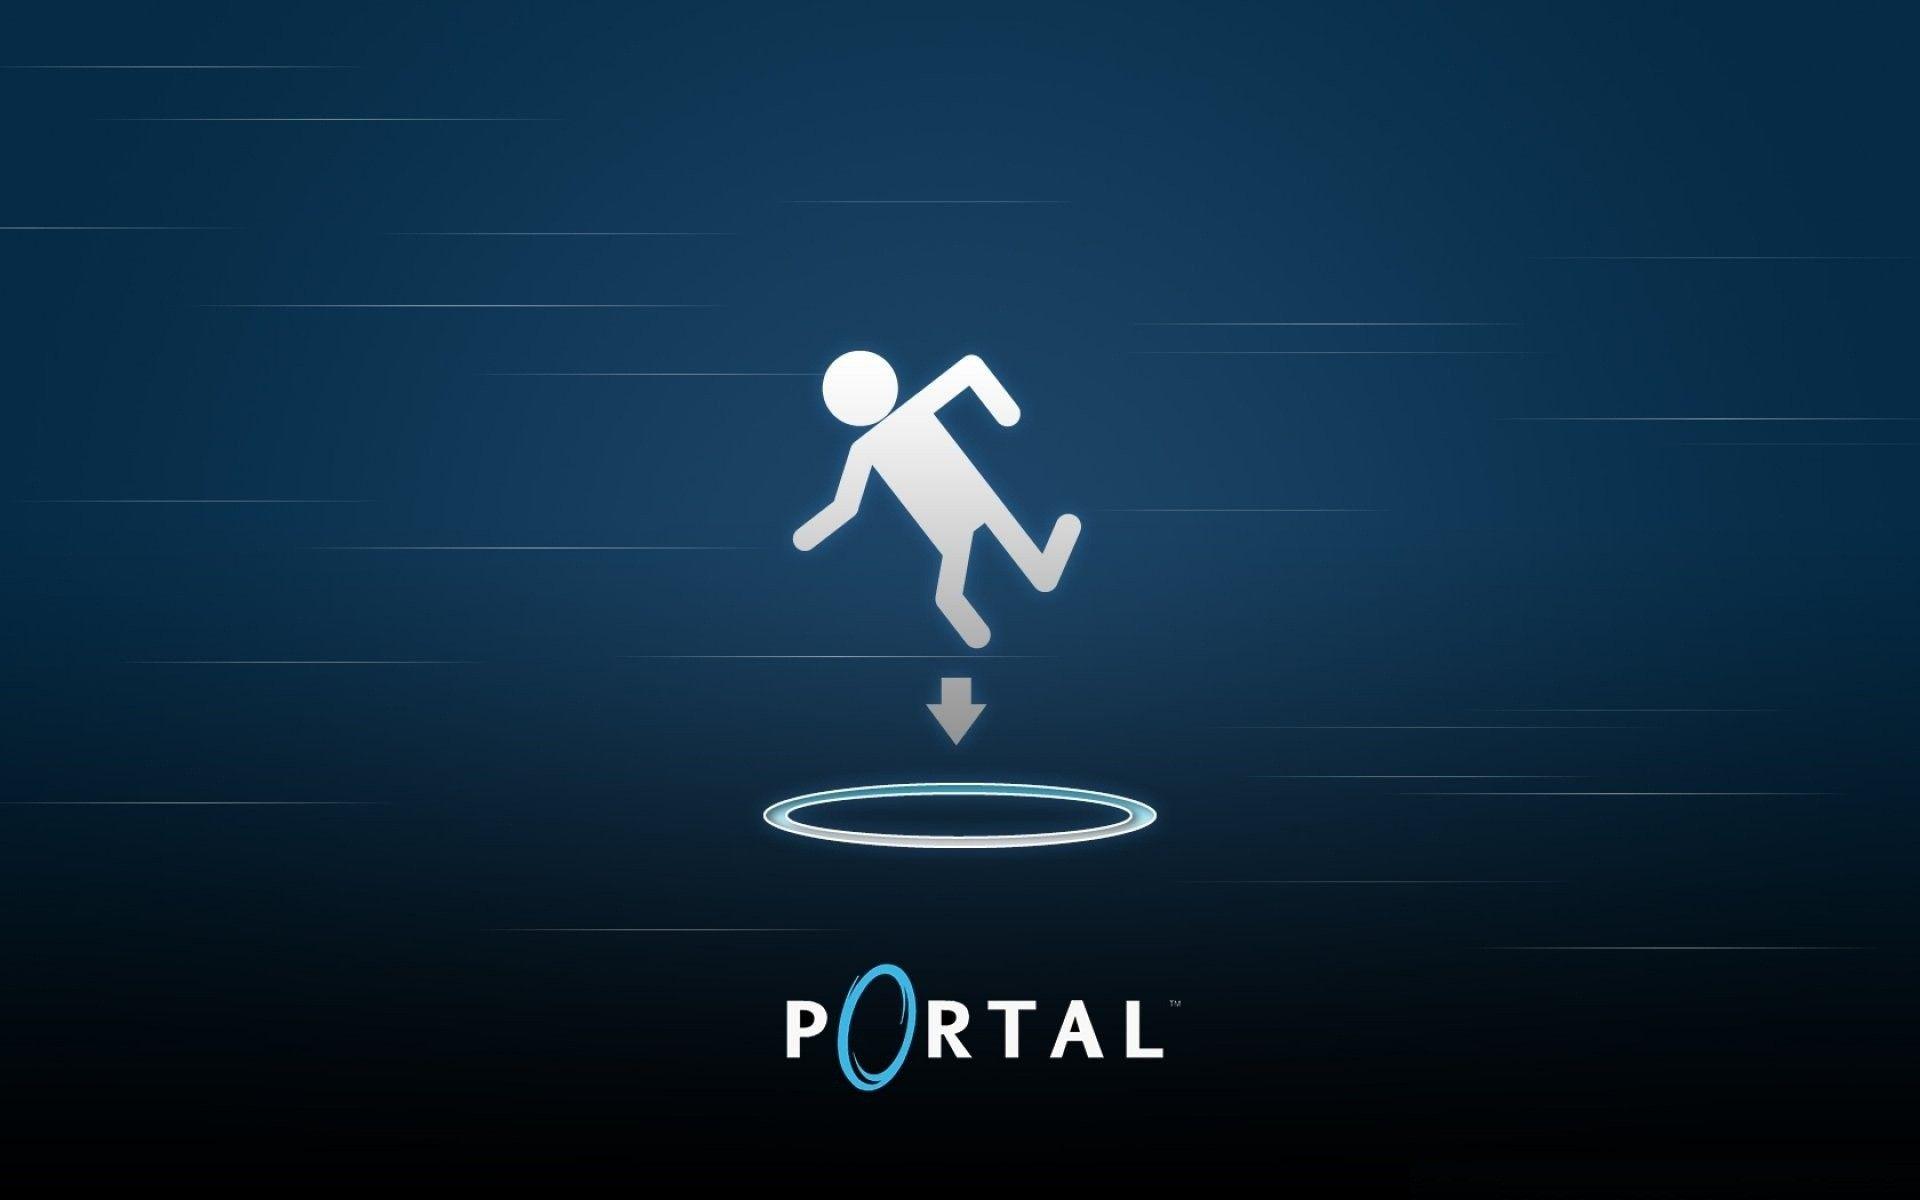 Portal Logo - Portal Logo HD Wallpaper, Background Image